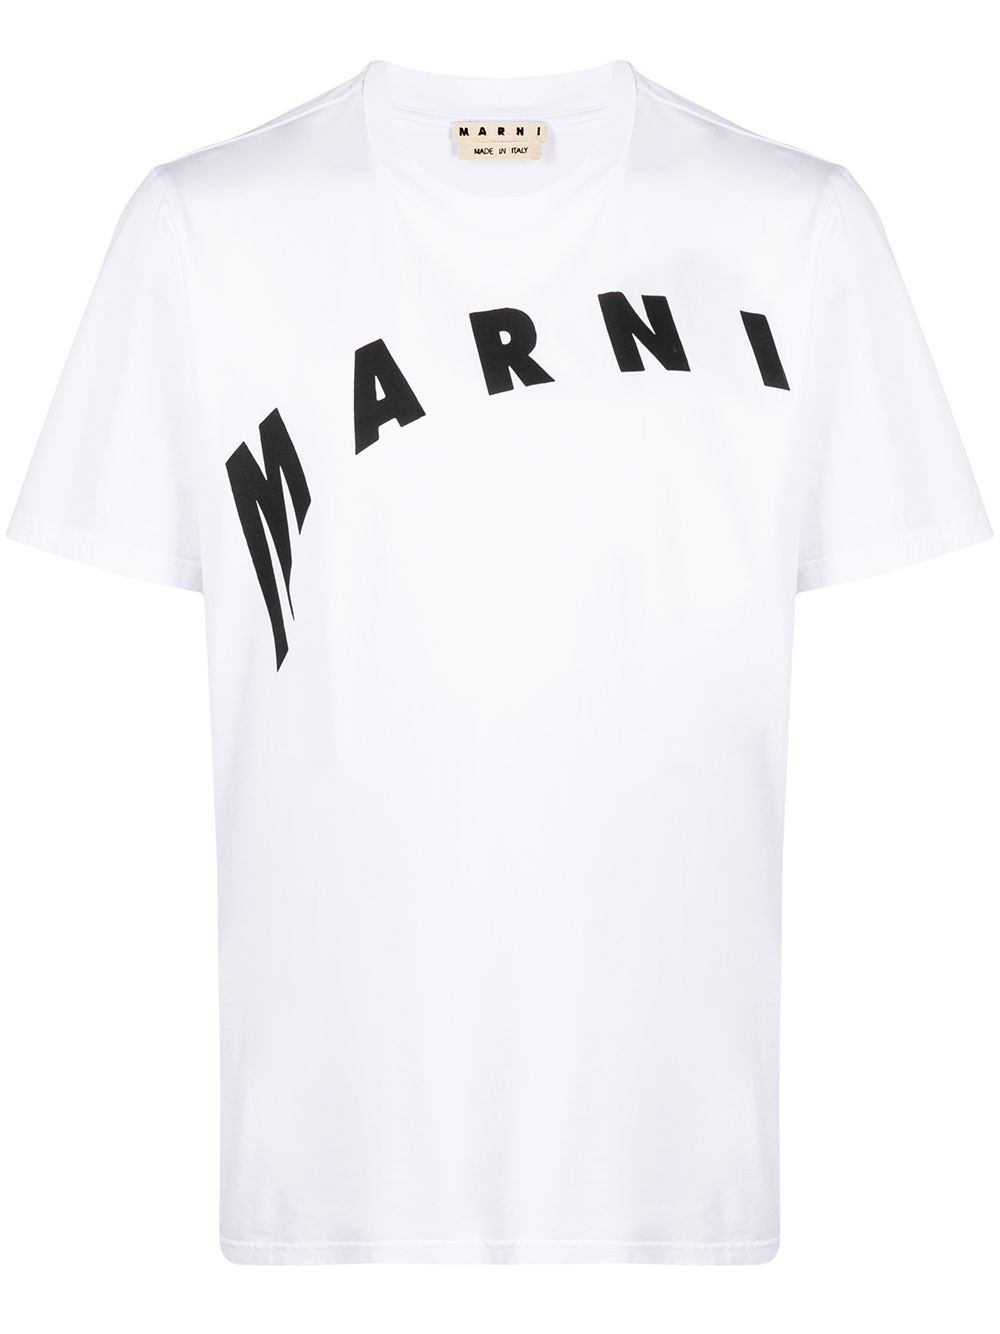 фото Marni футболка с логотипом